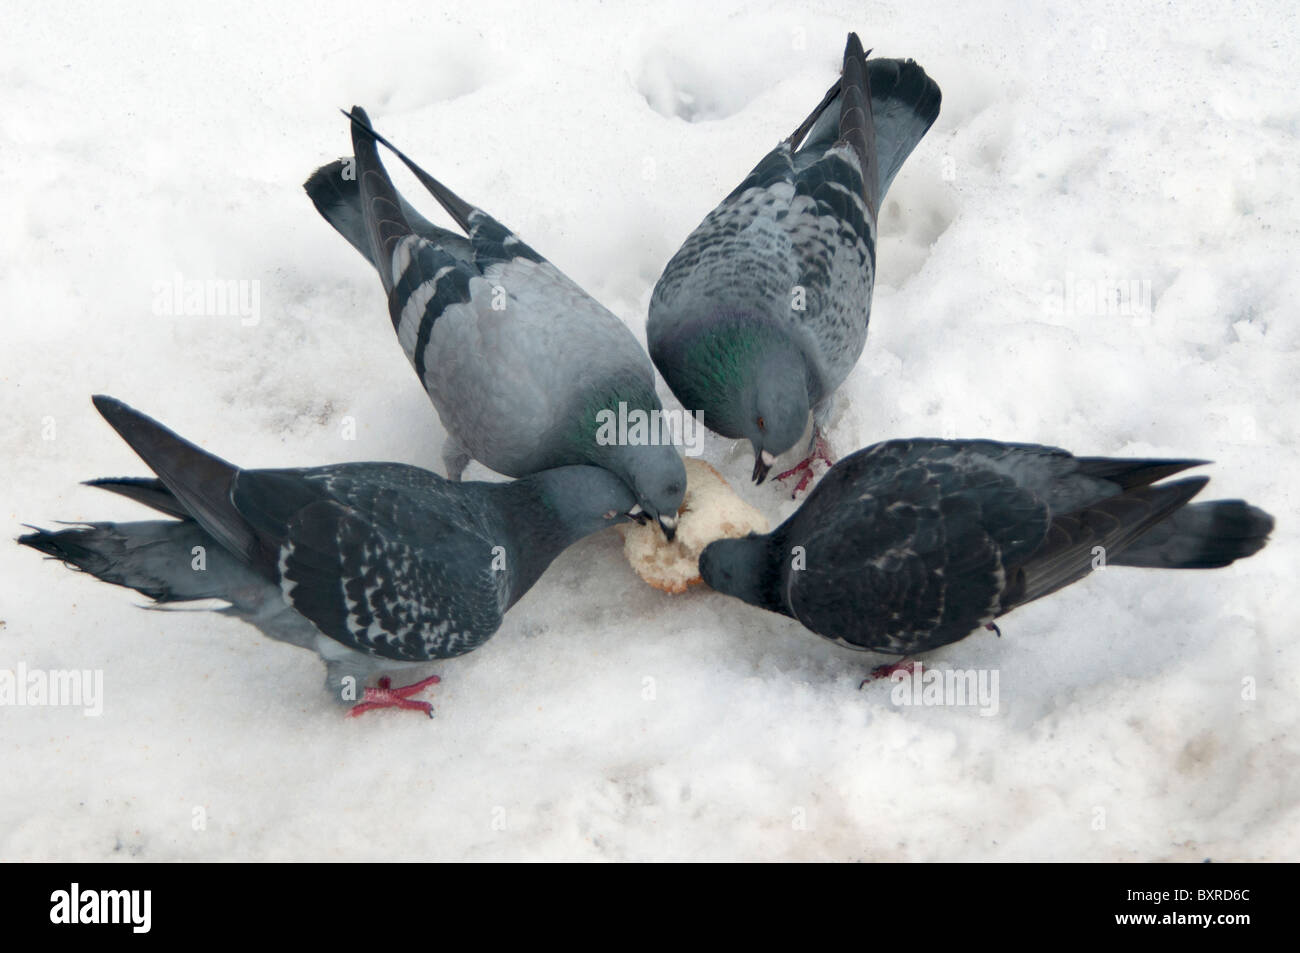 Tauben füttern auf ein Stück Brot in einer Schneewehe mitten im kanadischen Winter. Stockfoto